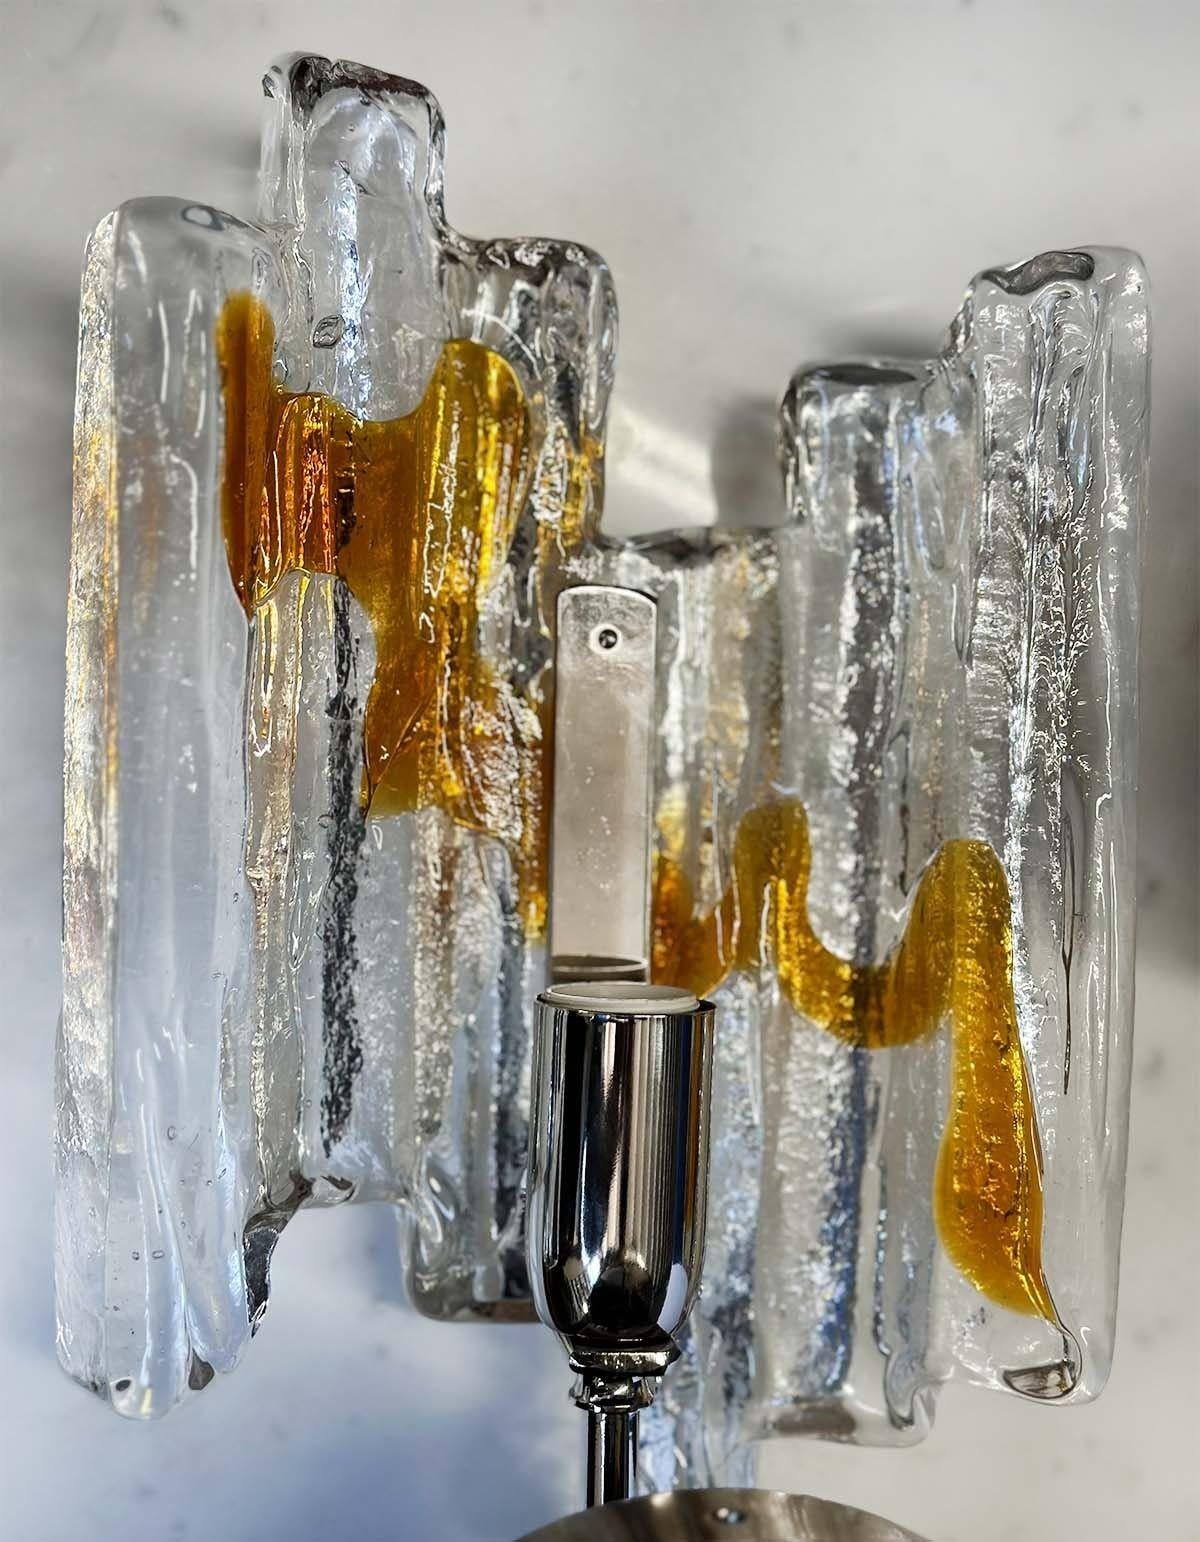 Paire d'appliques vintage en verre de Murano fabriquées en Italie dans les années 1960 et présentant une fusion de teintes claires et ambrées. Le verre transparent permet un jeu d'ombre et de lumière fascinant, créant une ambiance captivante dans